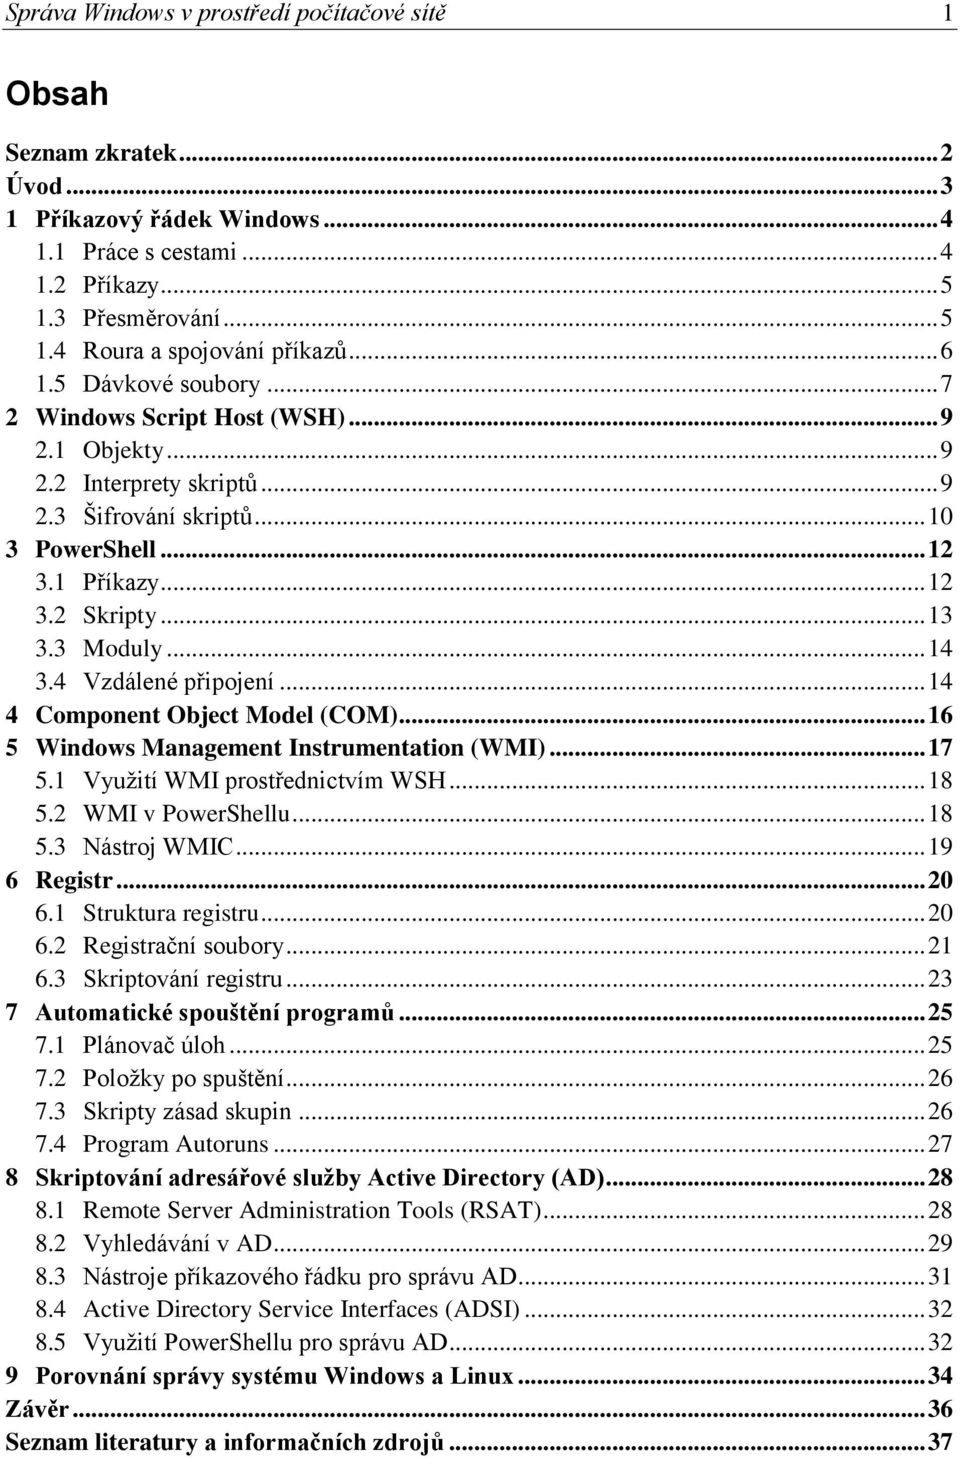 3 Moduly... 14 3.4 Vzdálené připojení... 14 4 Component Object Model (COM)... 16 5 Windows Management Instrumentation (WMI)... 17 5.1 Využití WMI prostřednictvím WSH... 18 5.2 WMI v PowerShellu... 18 5.3 Nástroj WMIC.